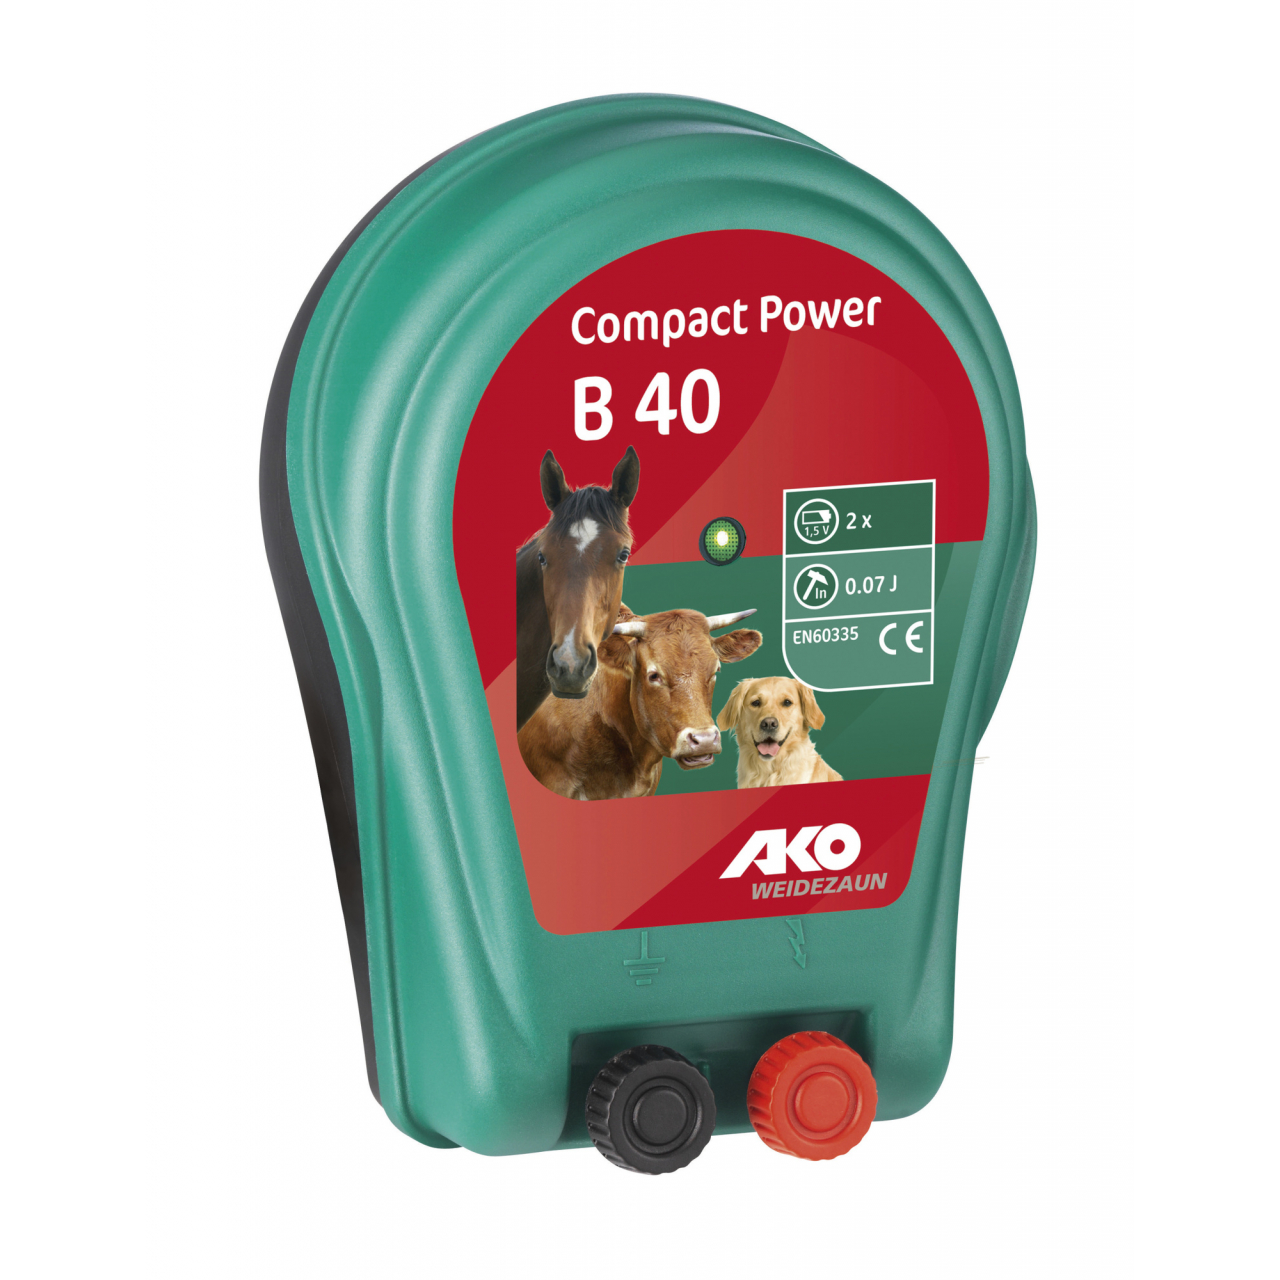 3 V Compact Power B 40 elemes készülék Compact Power B 40